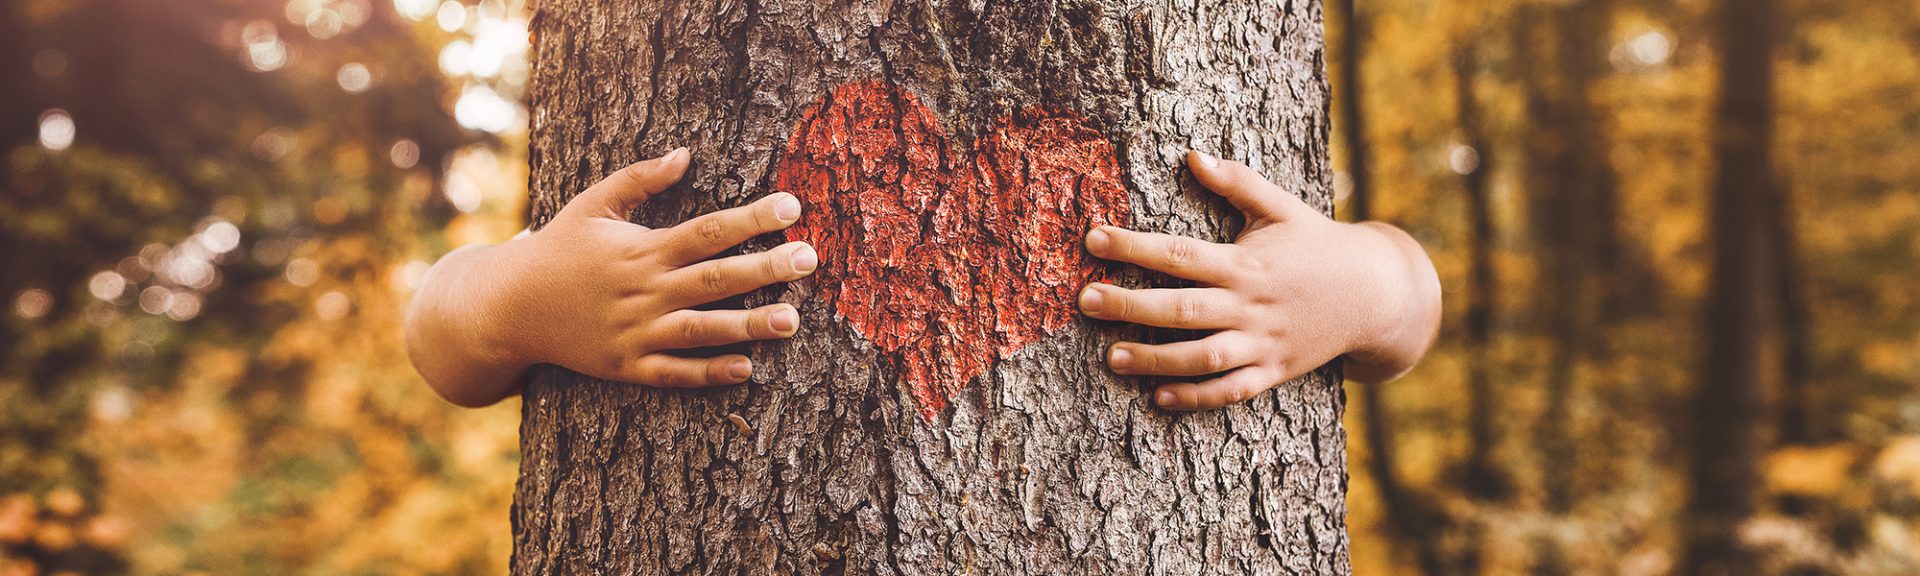 gros plan de mains d'enfants étreignant un arbre avec un cœur